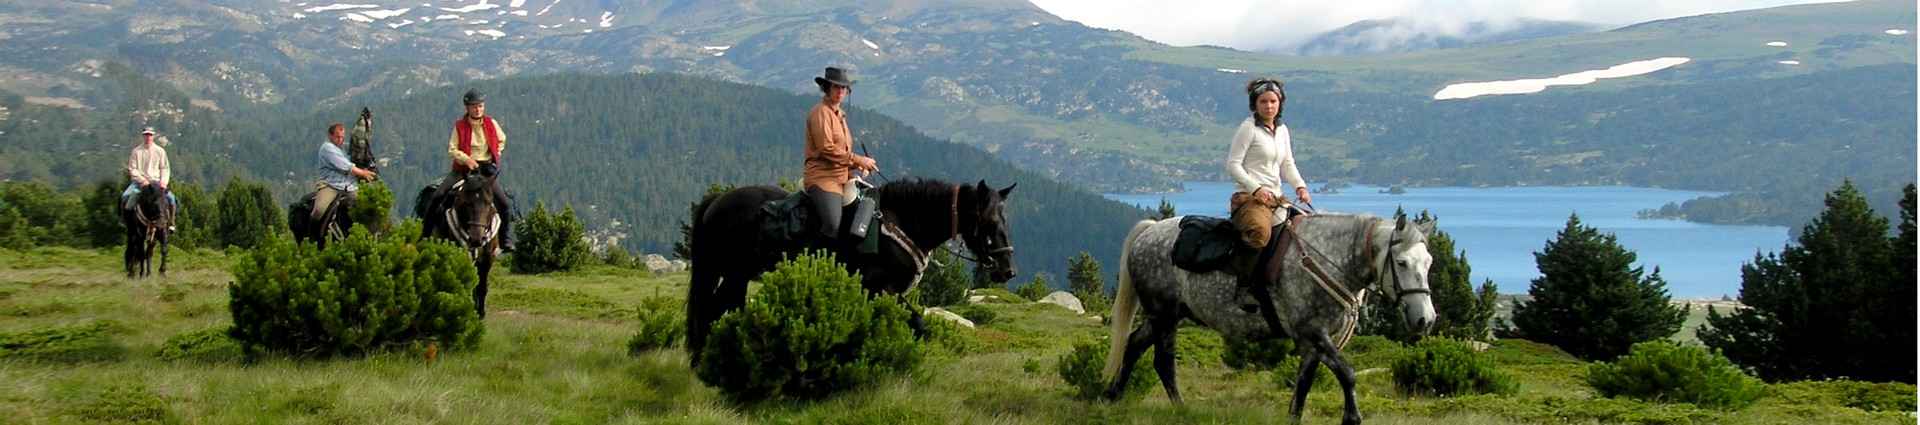 Randonnées équestres dans les Pyrénées